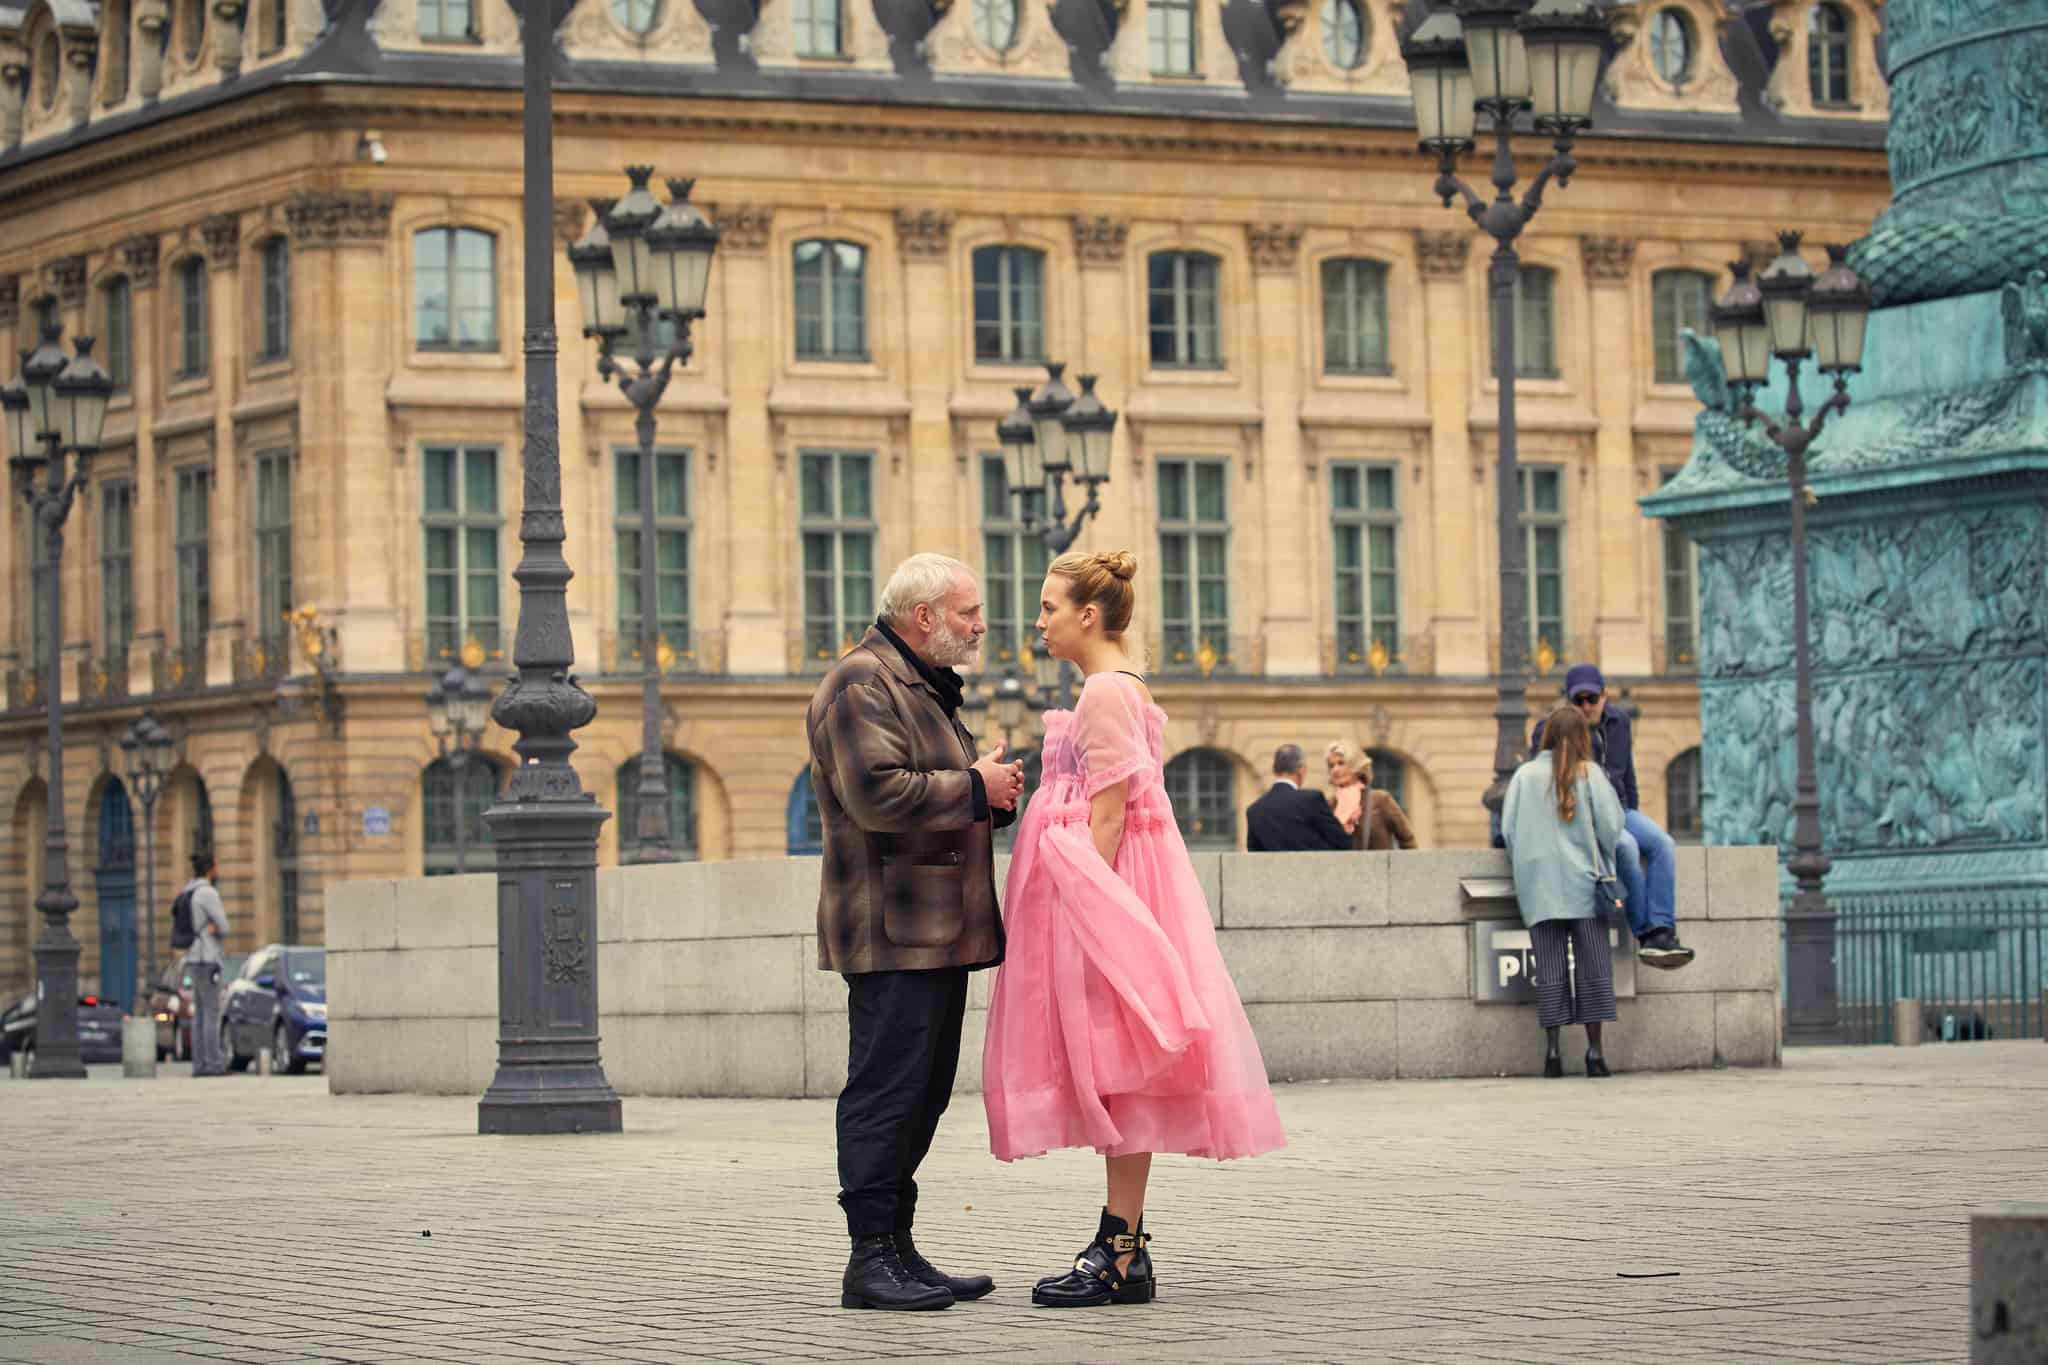 Konstantin and Villanelle talking in Place Vendôme, Paris